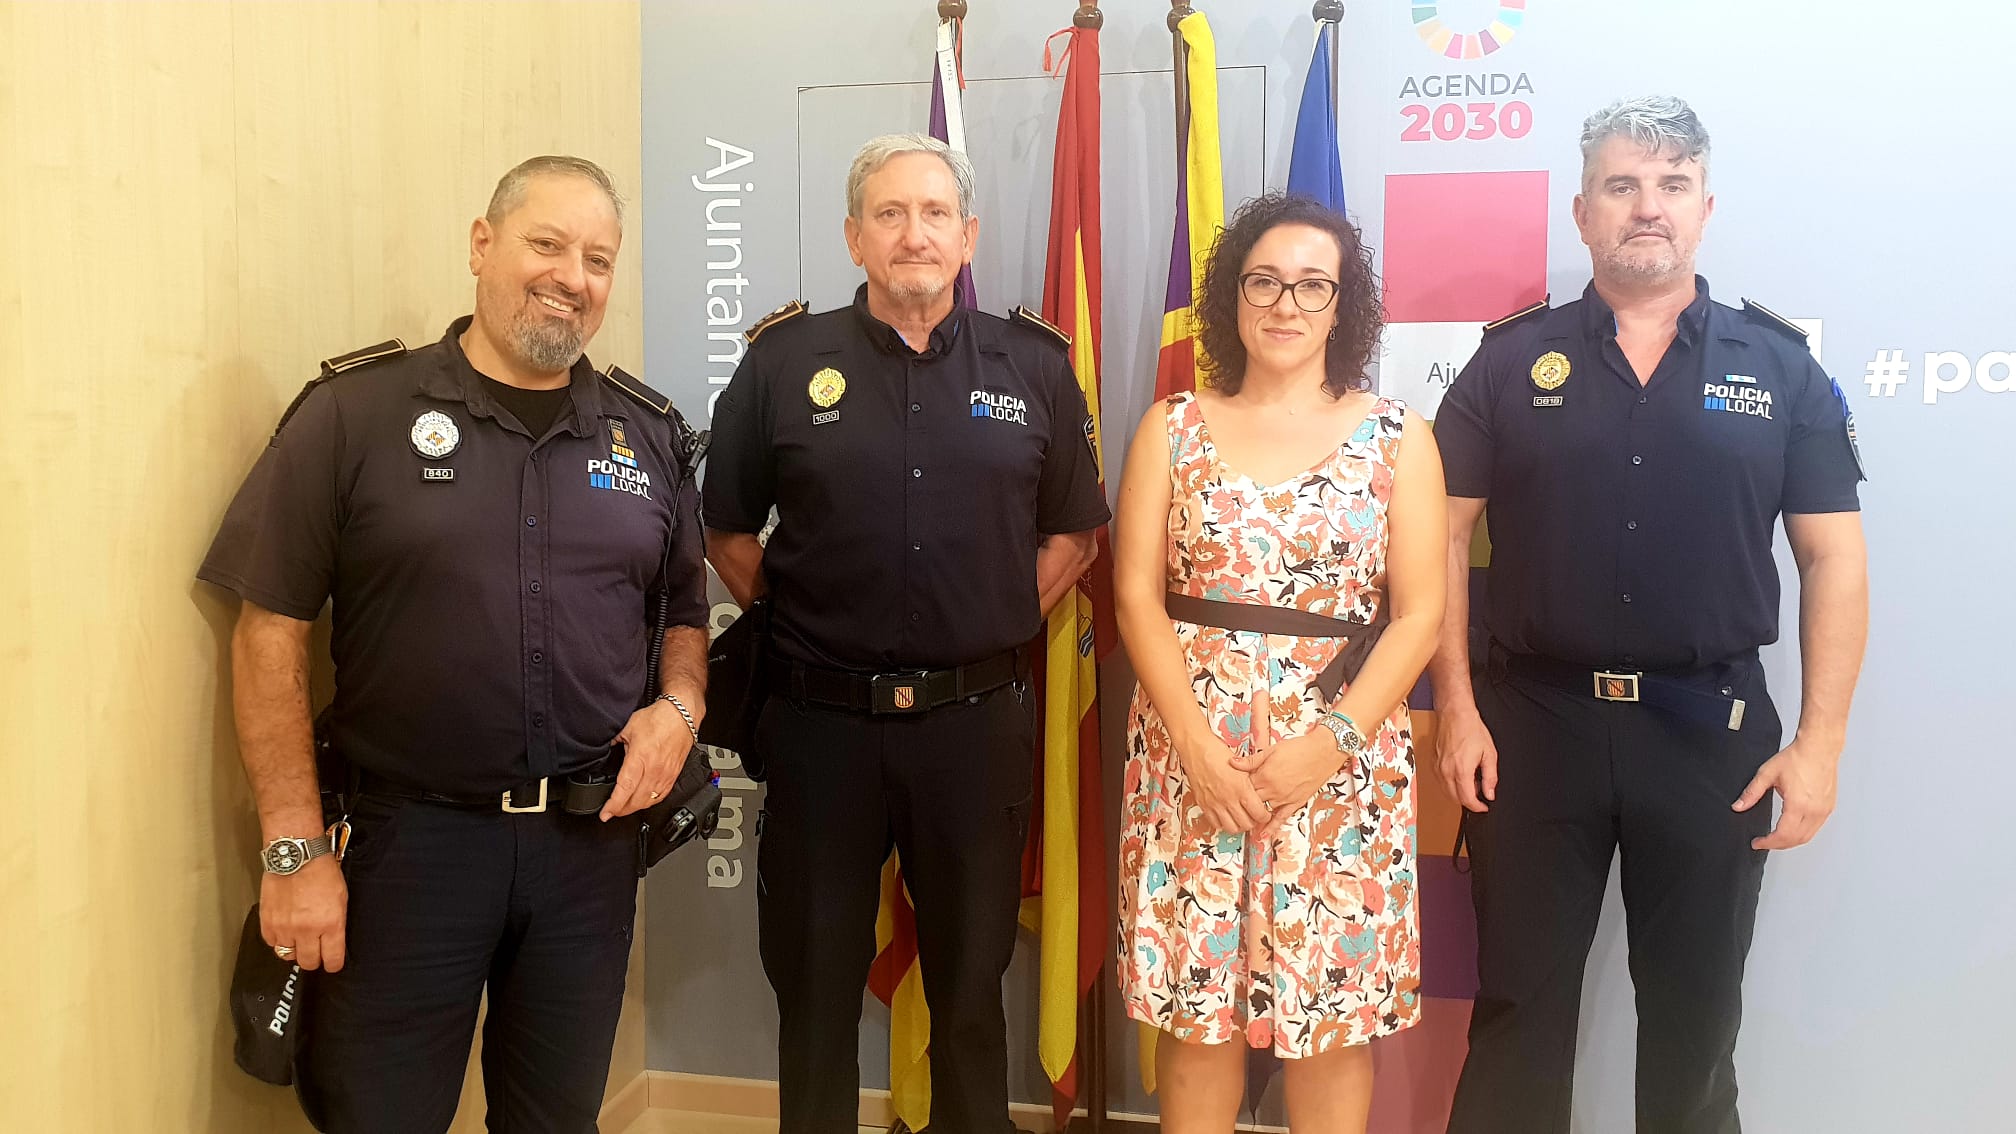 La Policía de Palma sigue sumando fuerza ampliando la unidad de policías tutores